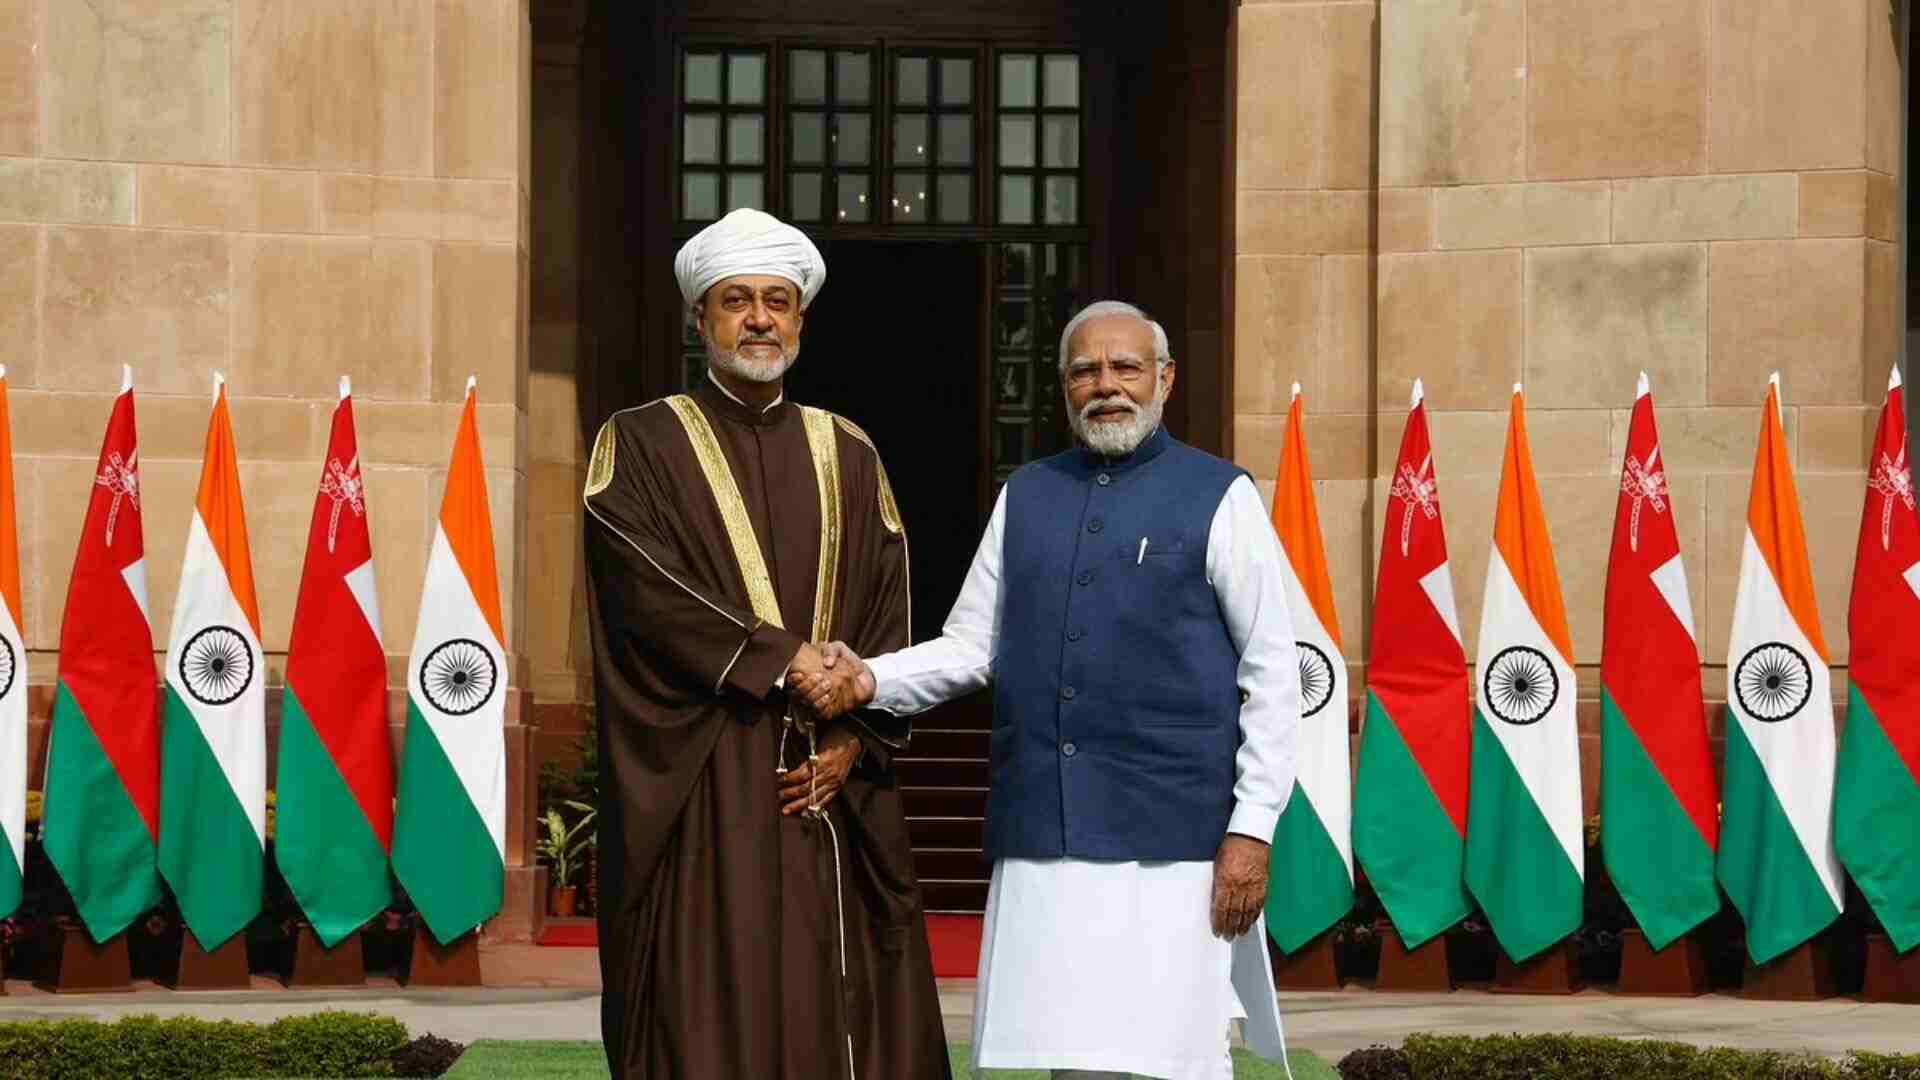 Sultan of Oman Congratulates PM Modi On His Third Term Election Win